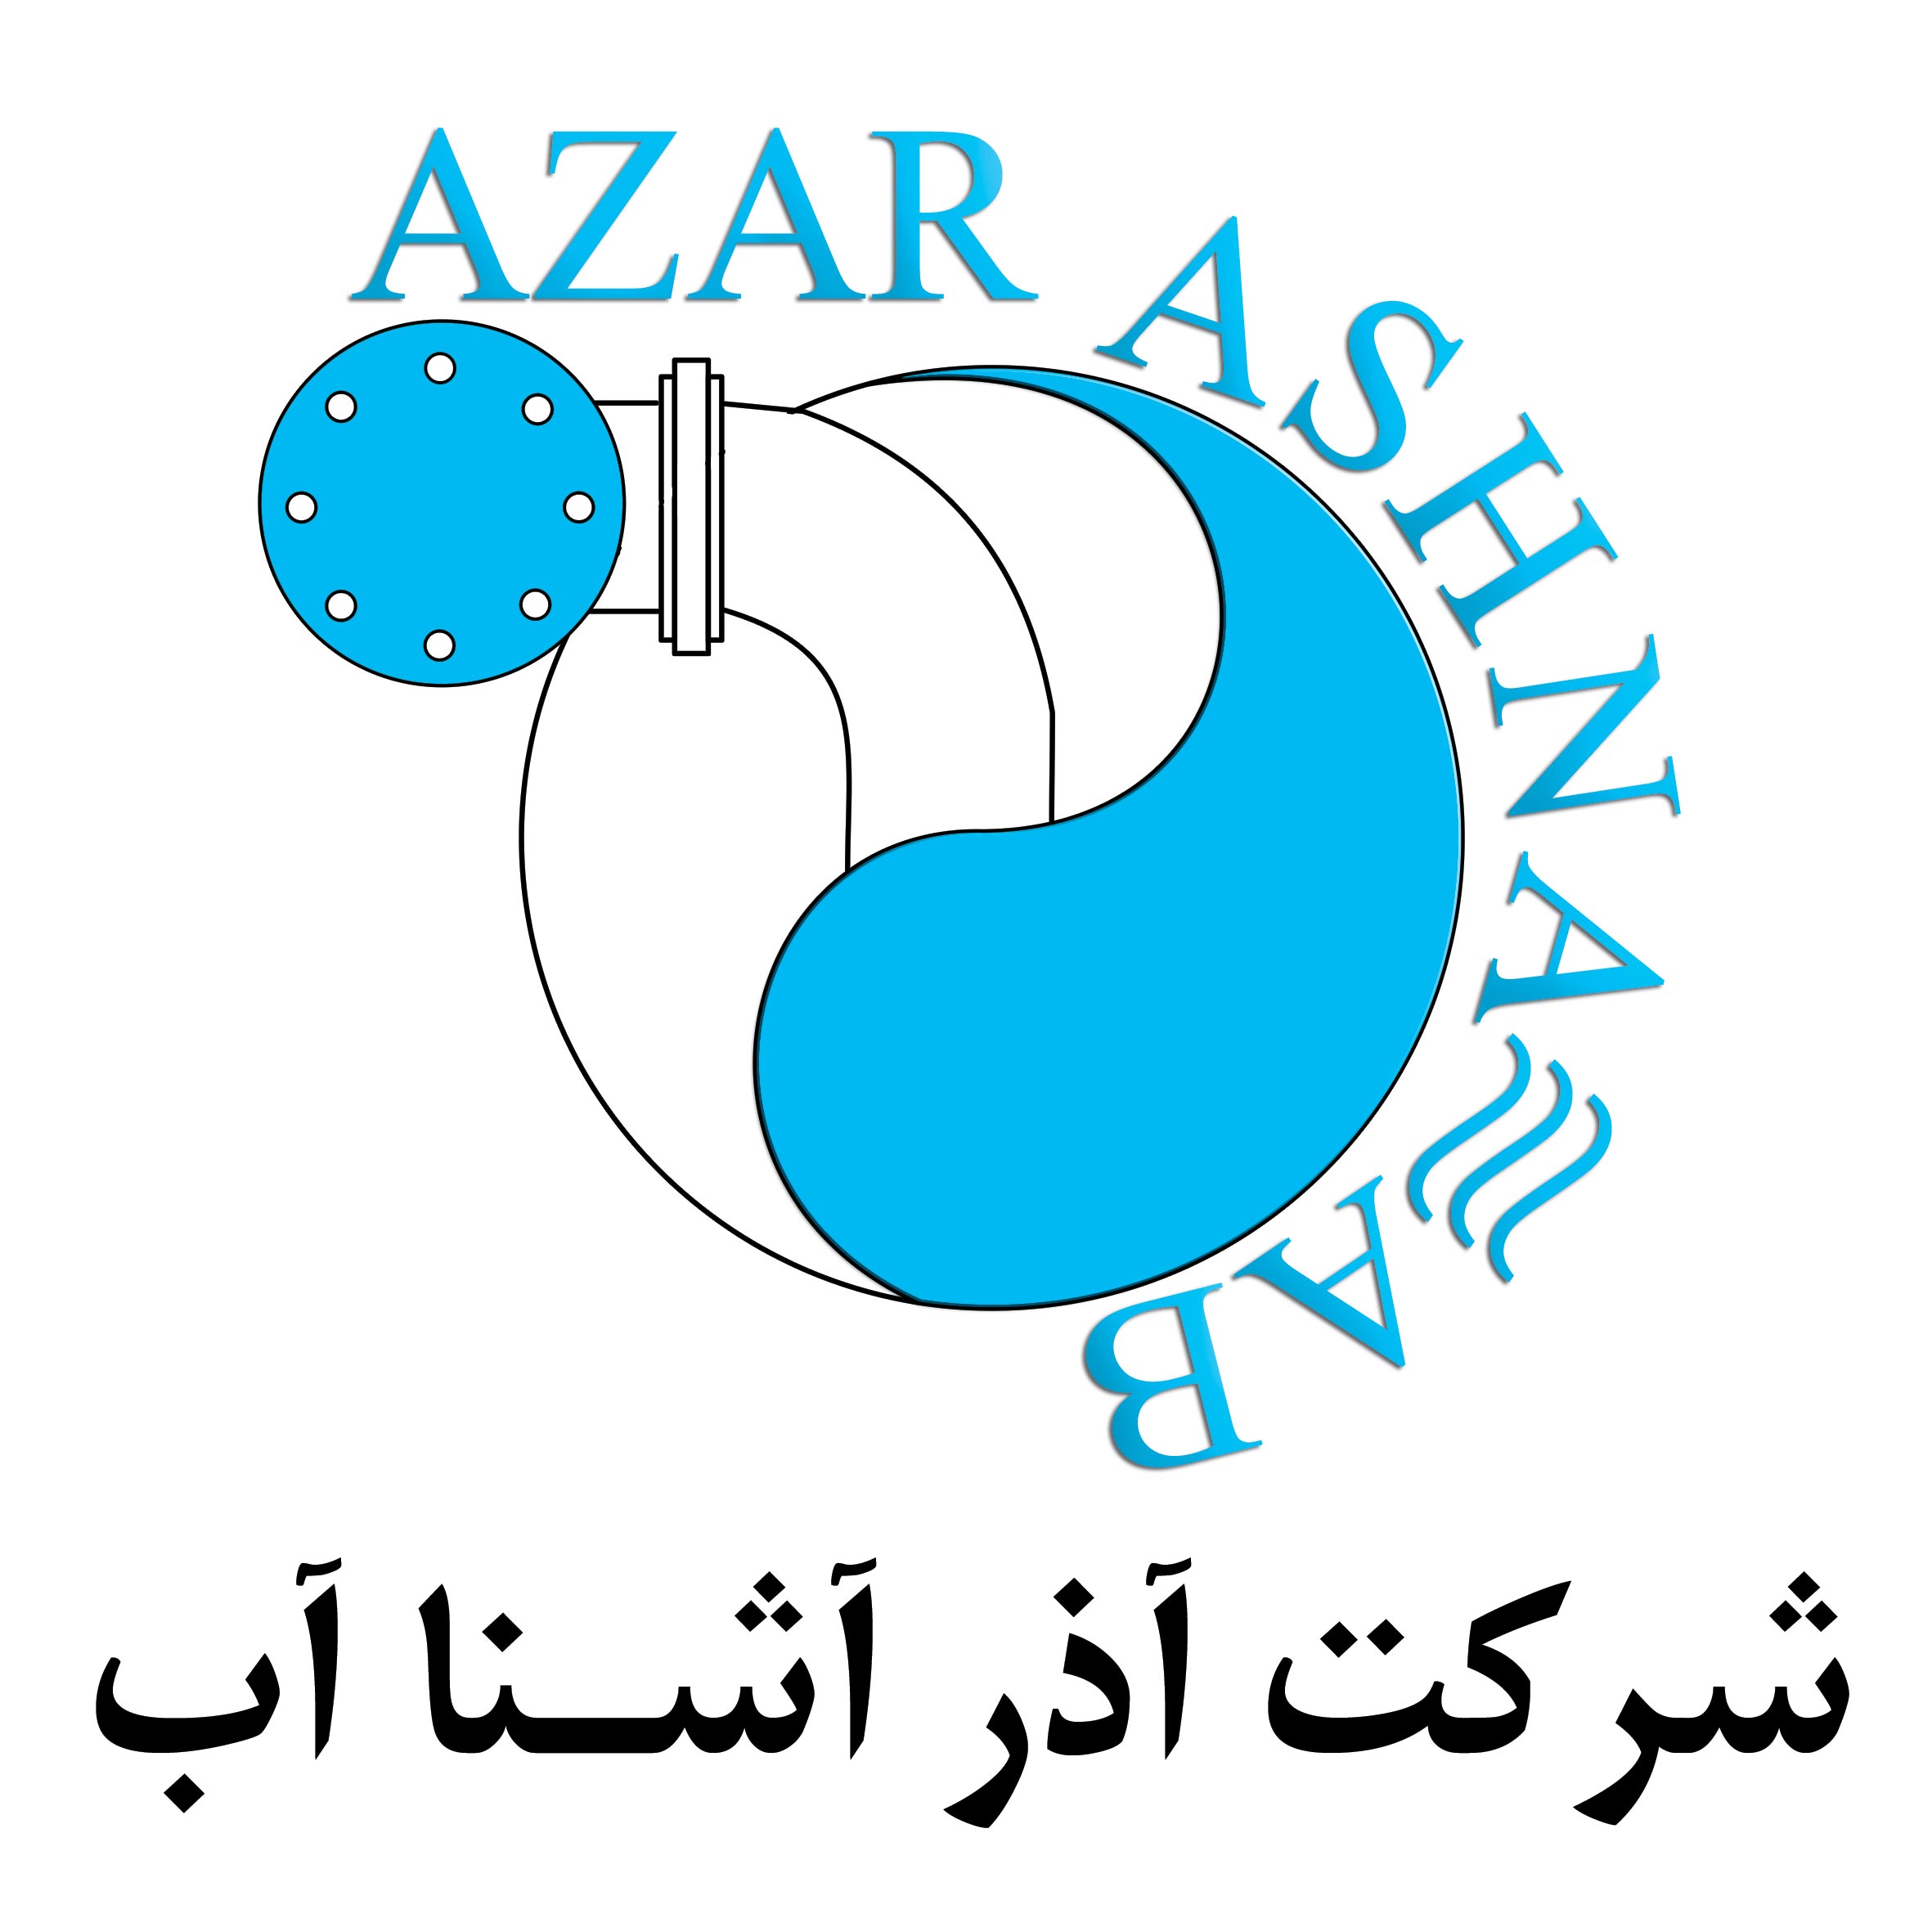 Azar Ashna Ab Co.